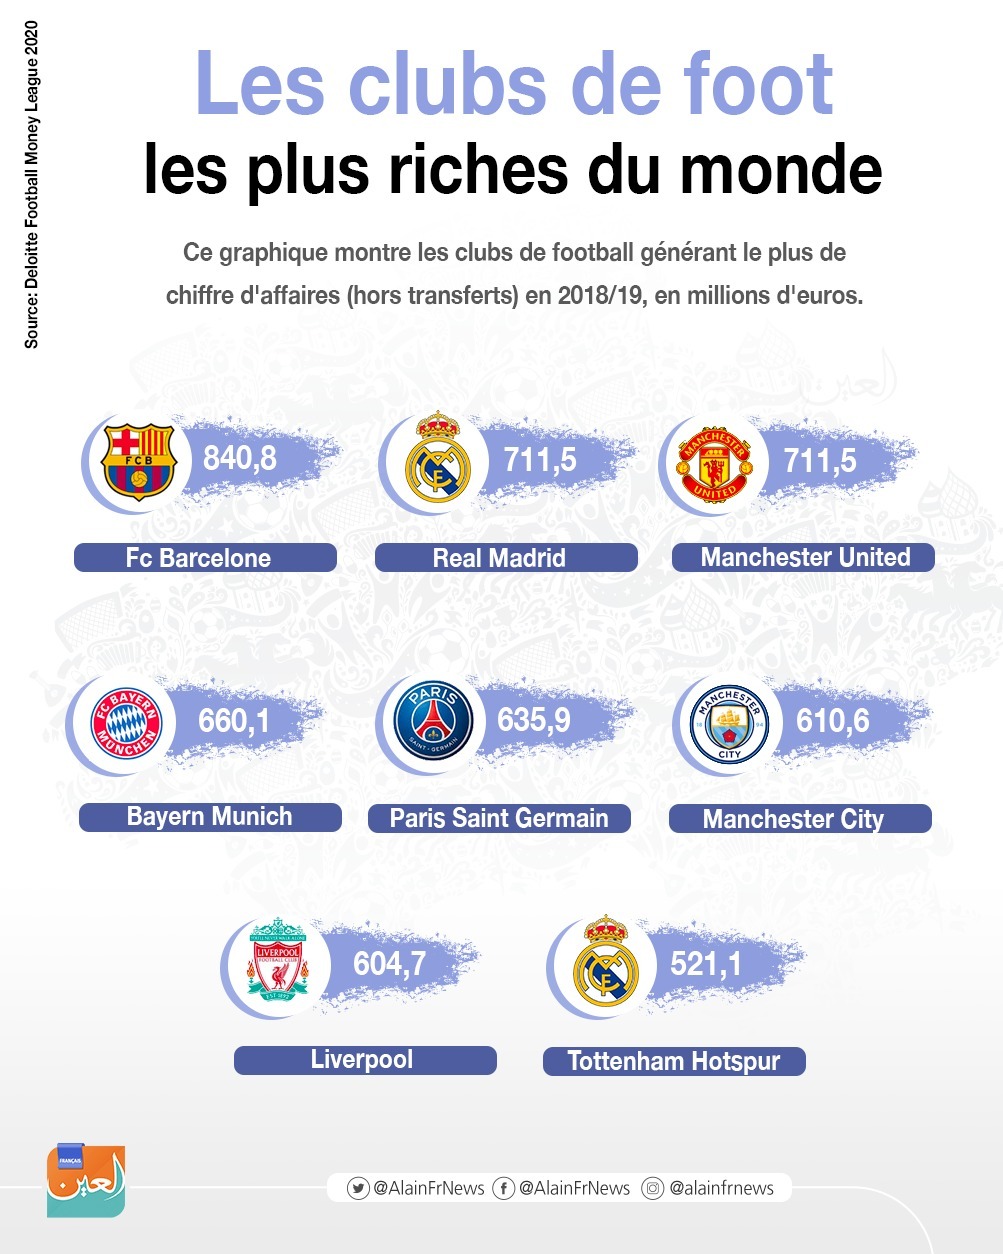 Les clubs de foot les plus riches du monde